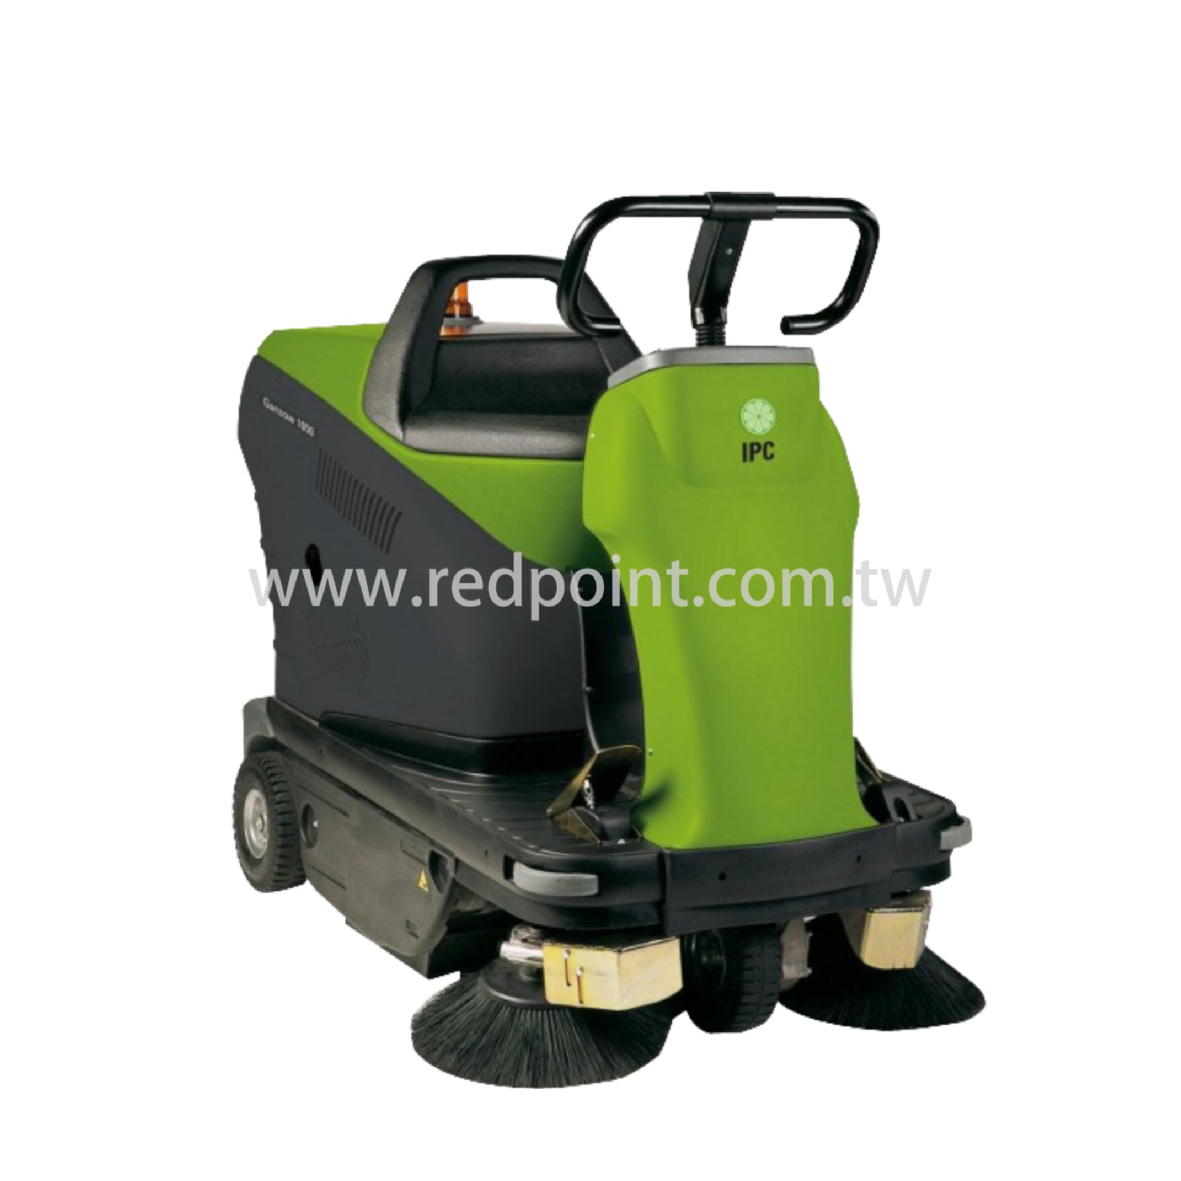 GN1050,自動掃地機,掃地機,電瓶,掃地刷,掃地機圓盤刷